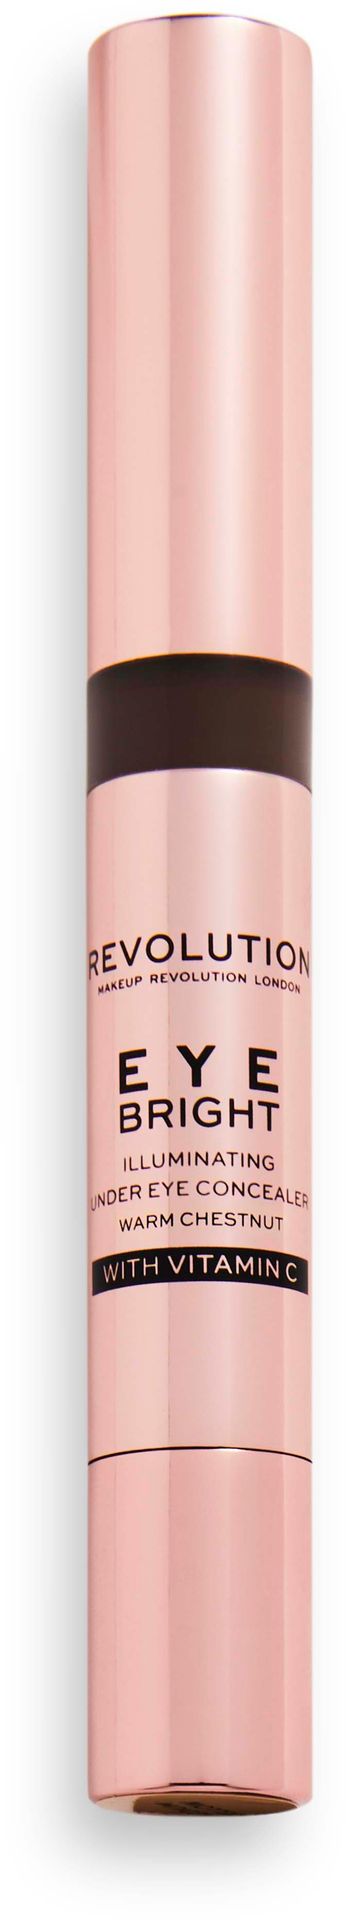 Makeup Revolution, Eye Bright Concealer, Korektor rozświetlający pod oczy 13 Warm Chestnut